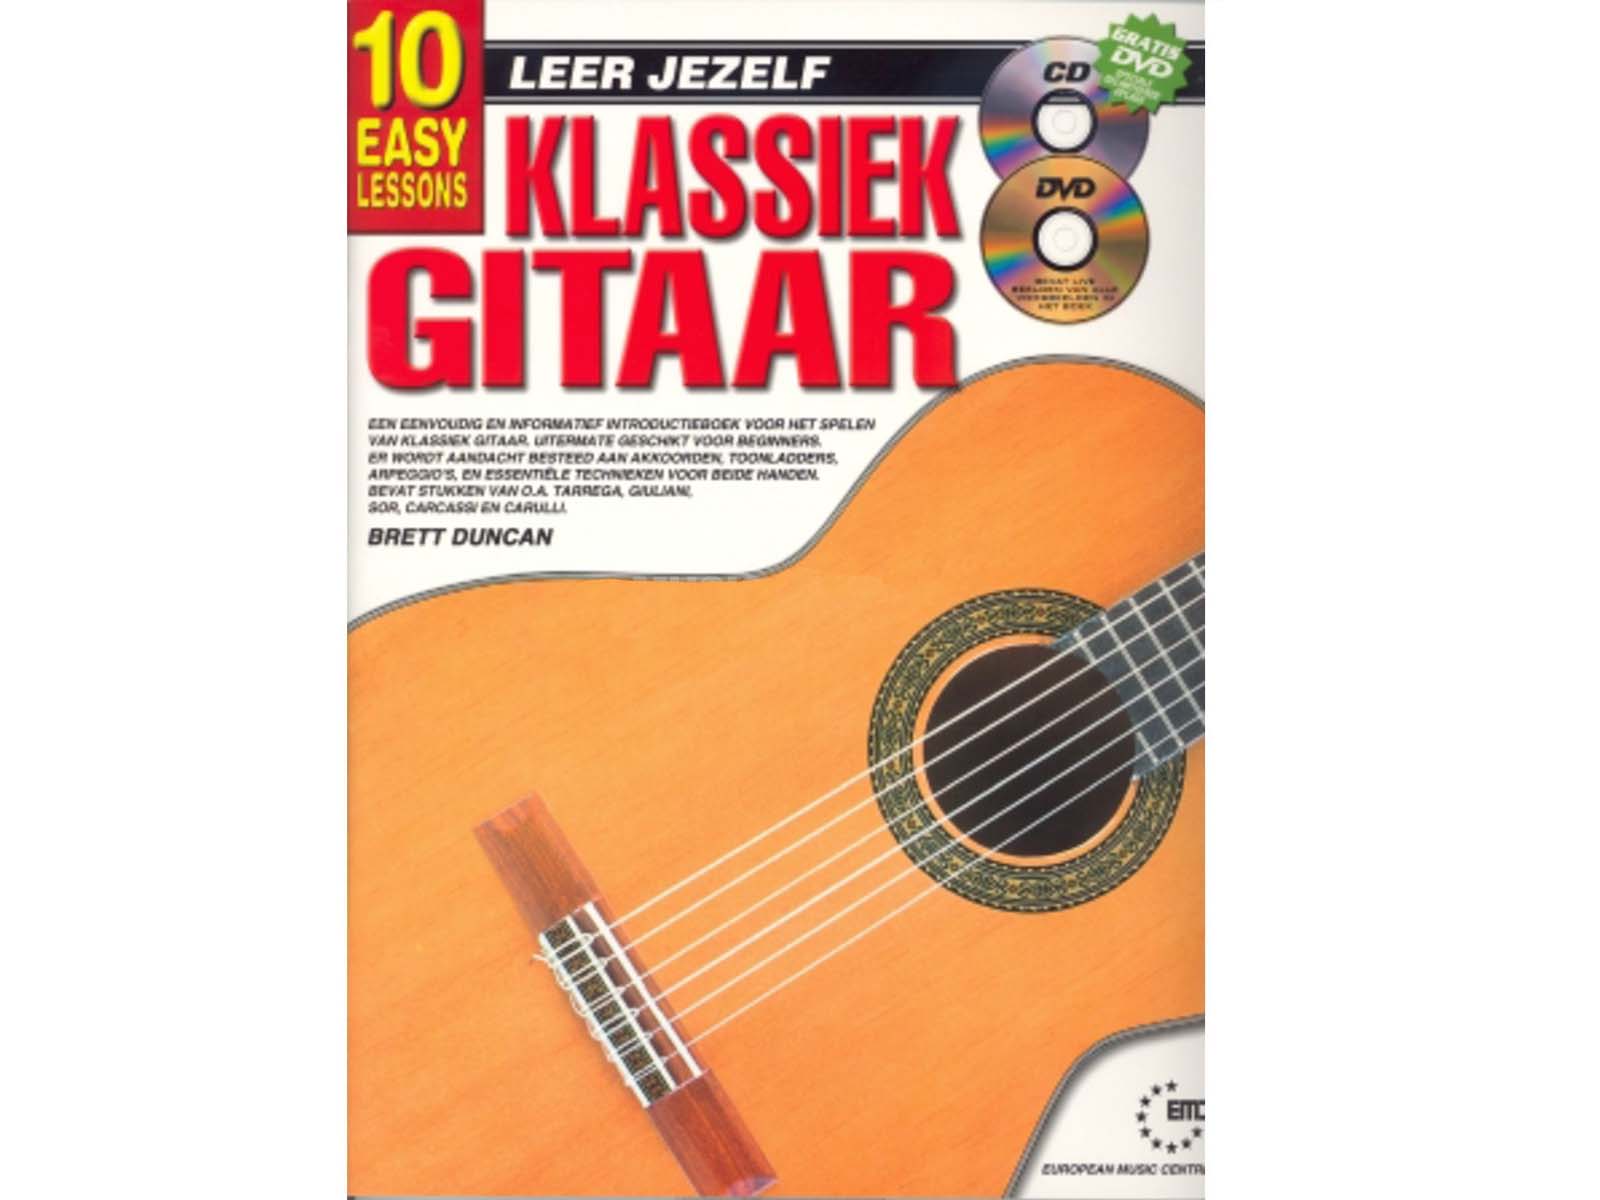 terugtrekken Carry Gladys Bladmuziek kopen | Leer jezelf klassiek gitaar lesmethode met cd/dvd |  Welkom